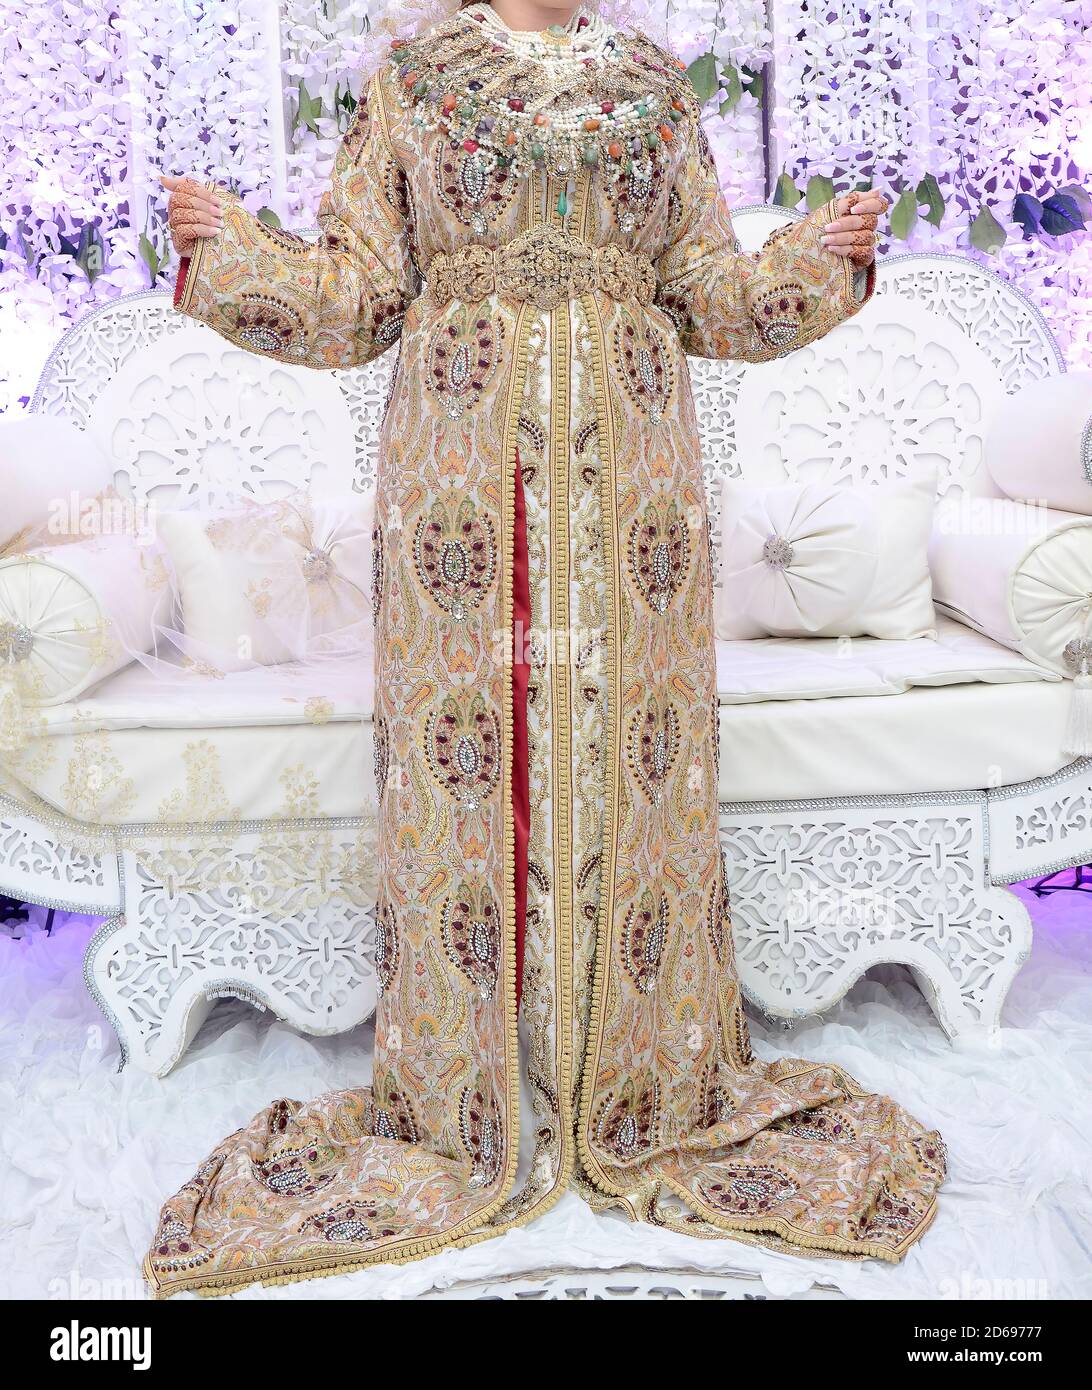 La robe traditionnelle de la mariée marocaine. Belle mariée portant caftan marocain et bijoux précieux Banque D'Images